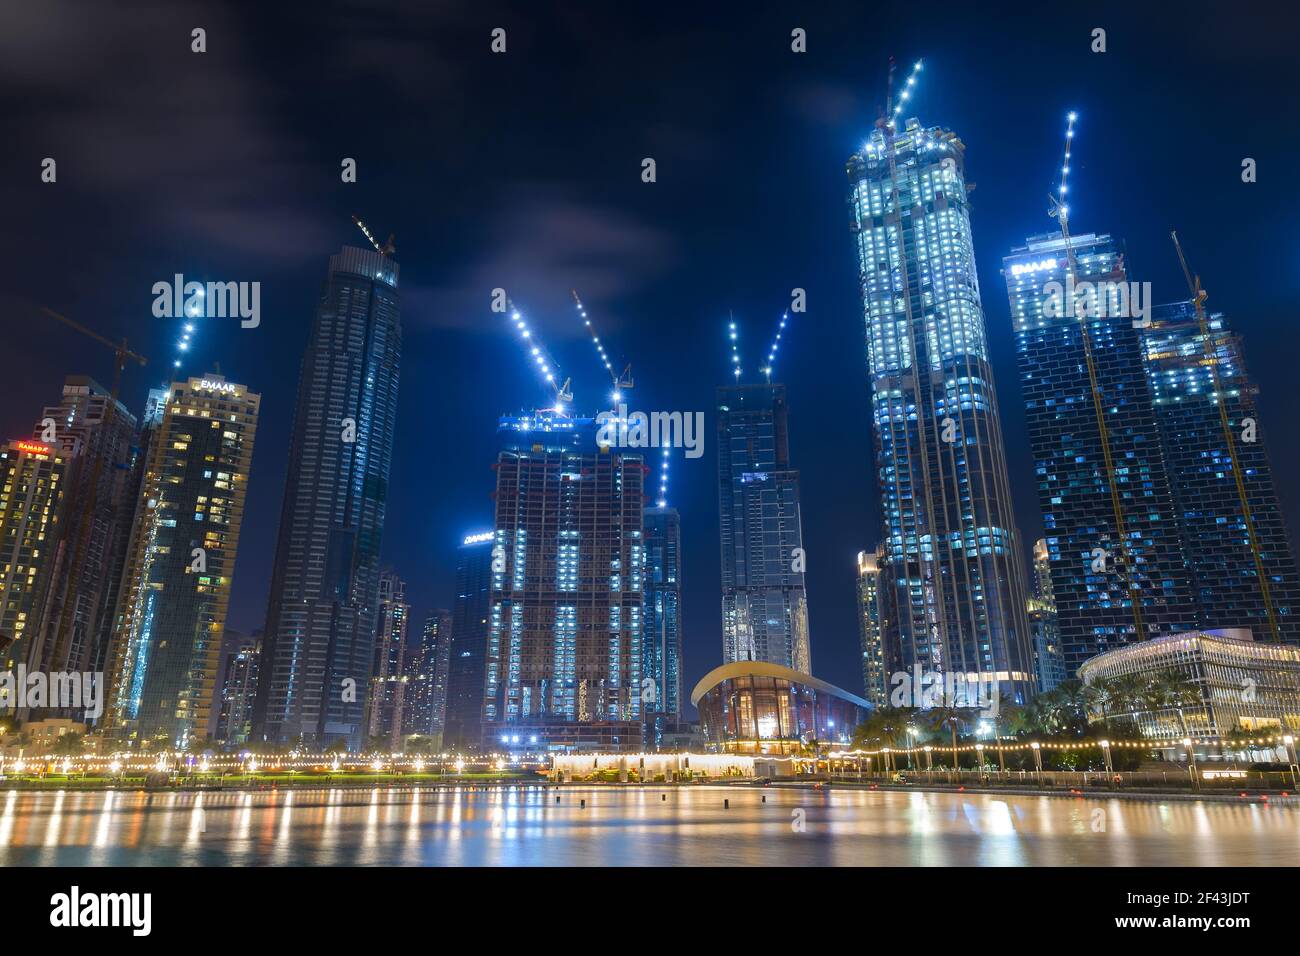 Plusieurs bâtiments avec grues la nuit près du centre commercial Dubai Mall dans les Émirats arabes Unis. Grues de construction intégrées éclairées. Banque D'Images